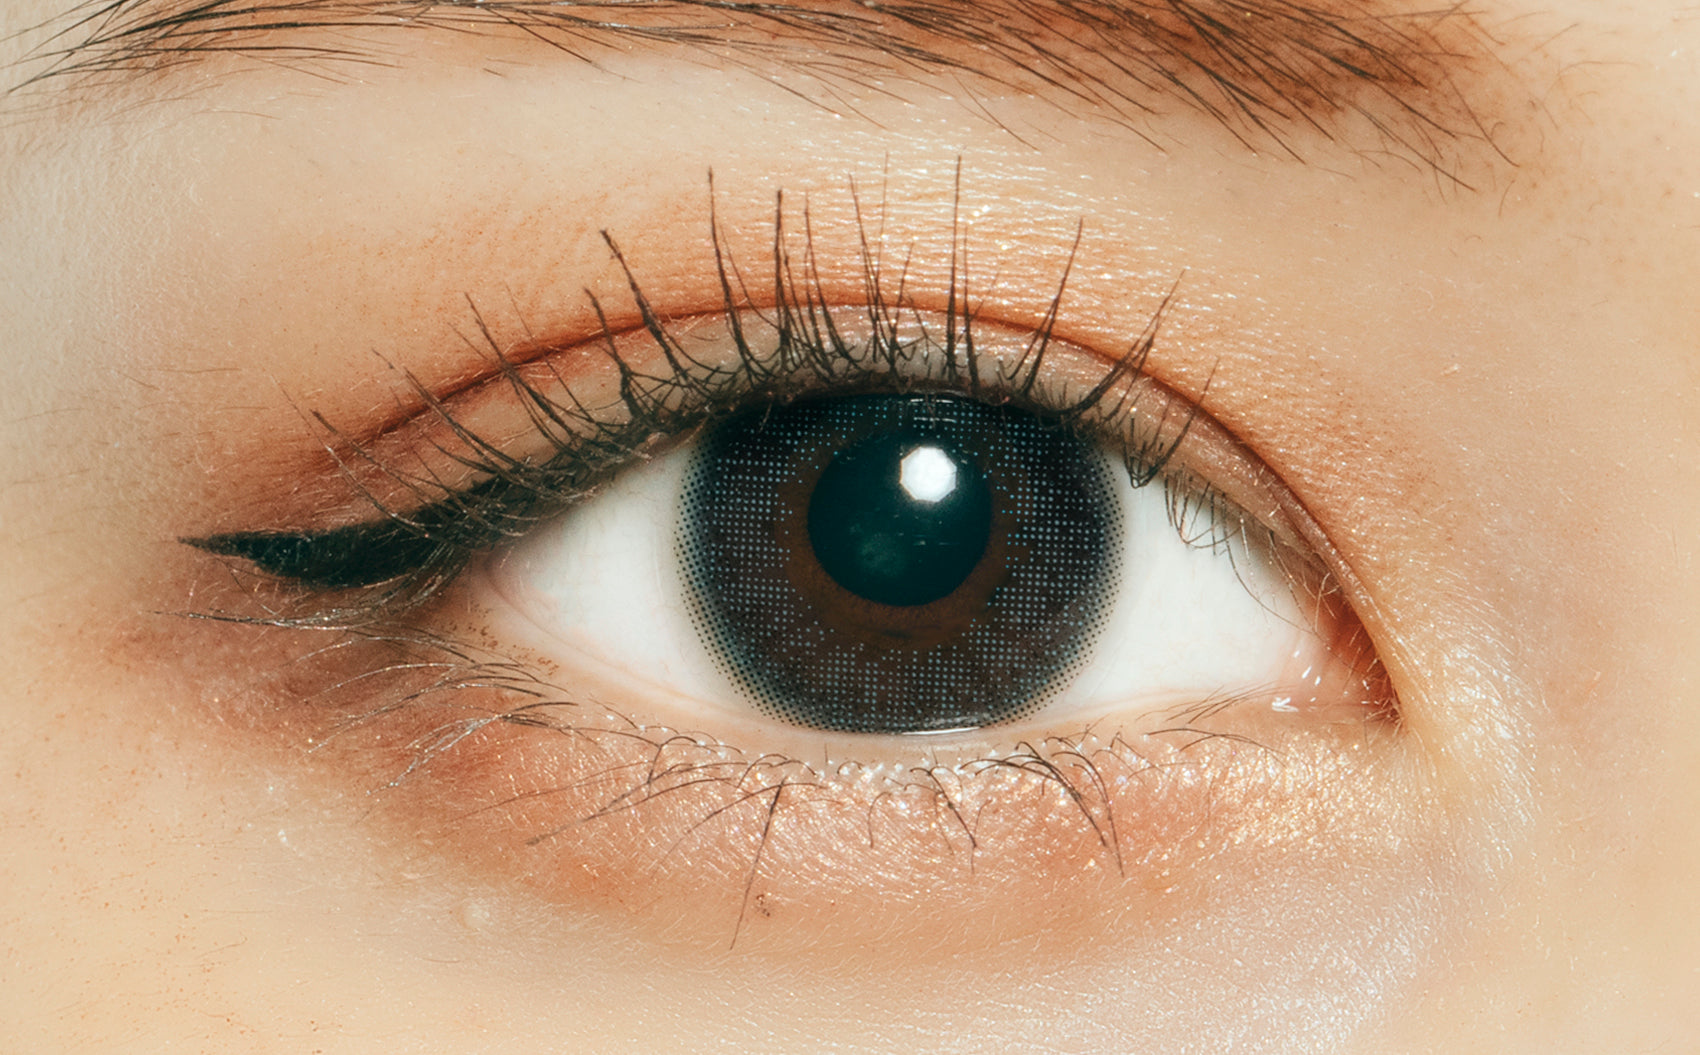 カラーコンタクトレンズ、ramurie ティアーグレー | 1dayを装用した状態の目のアップ画像